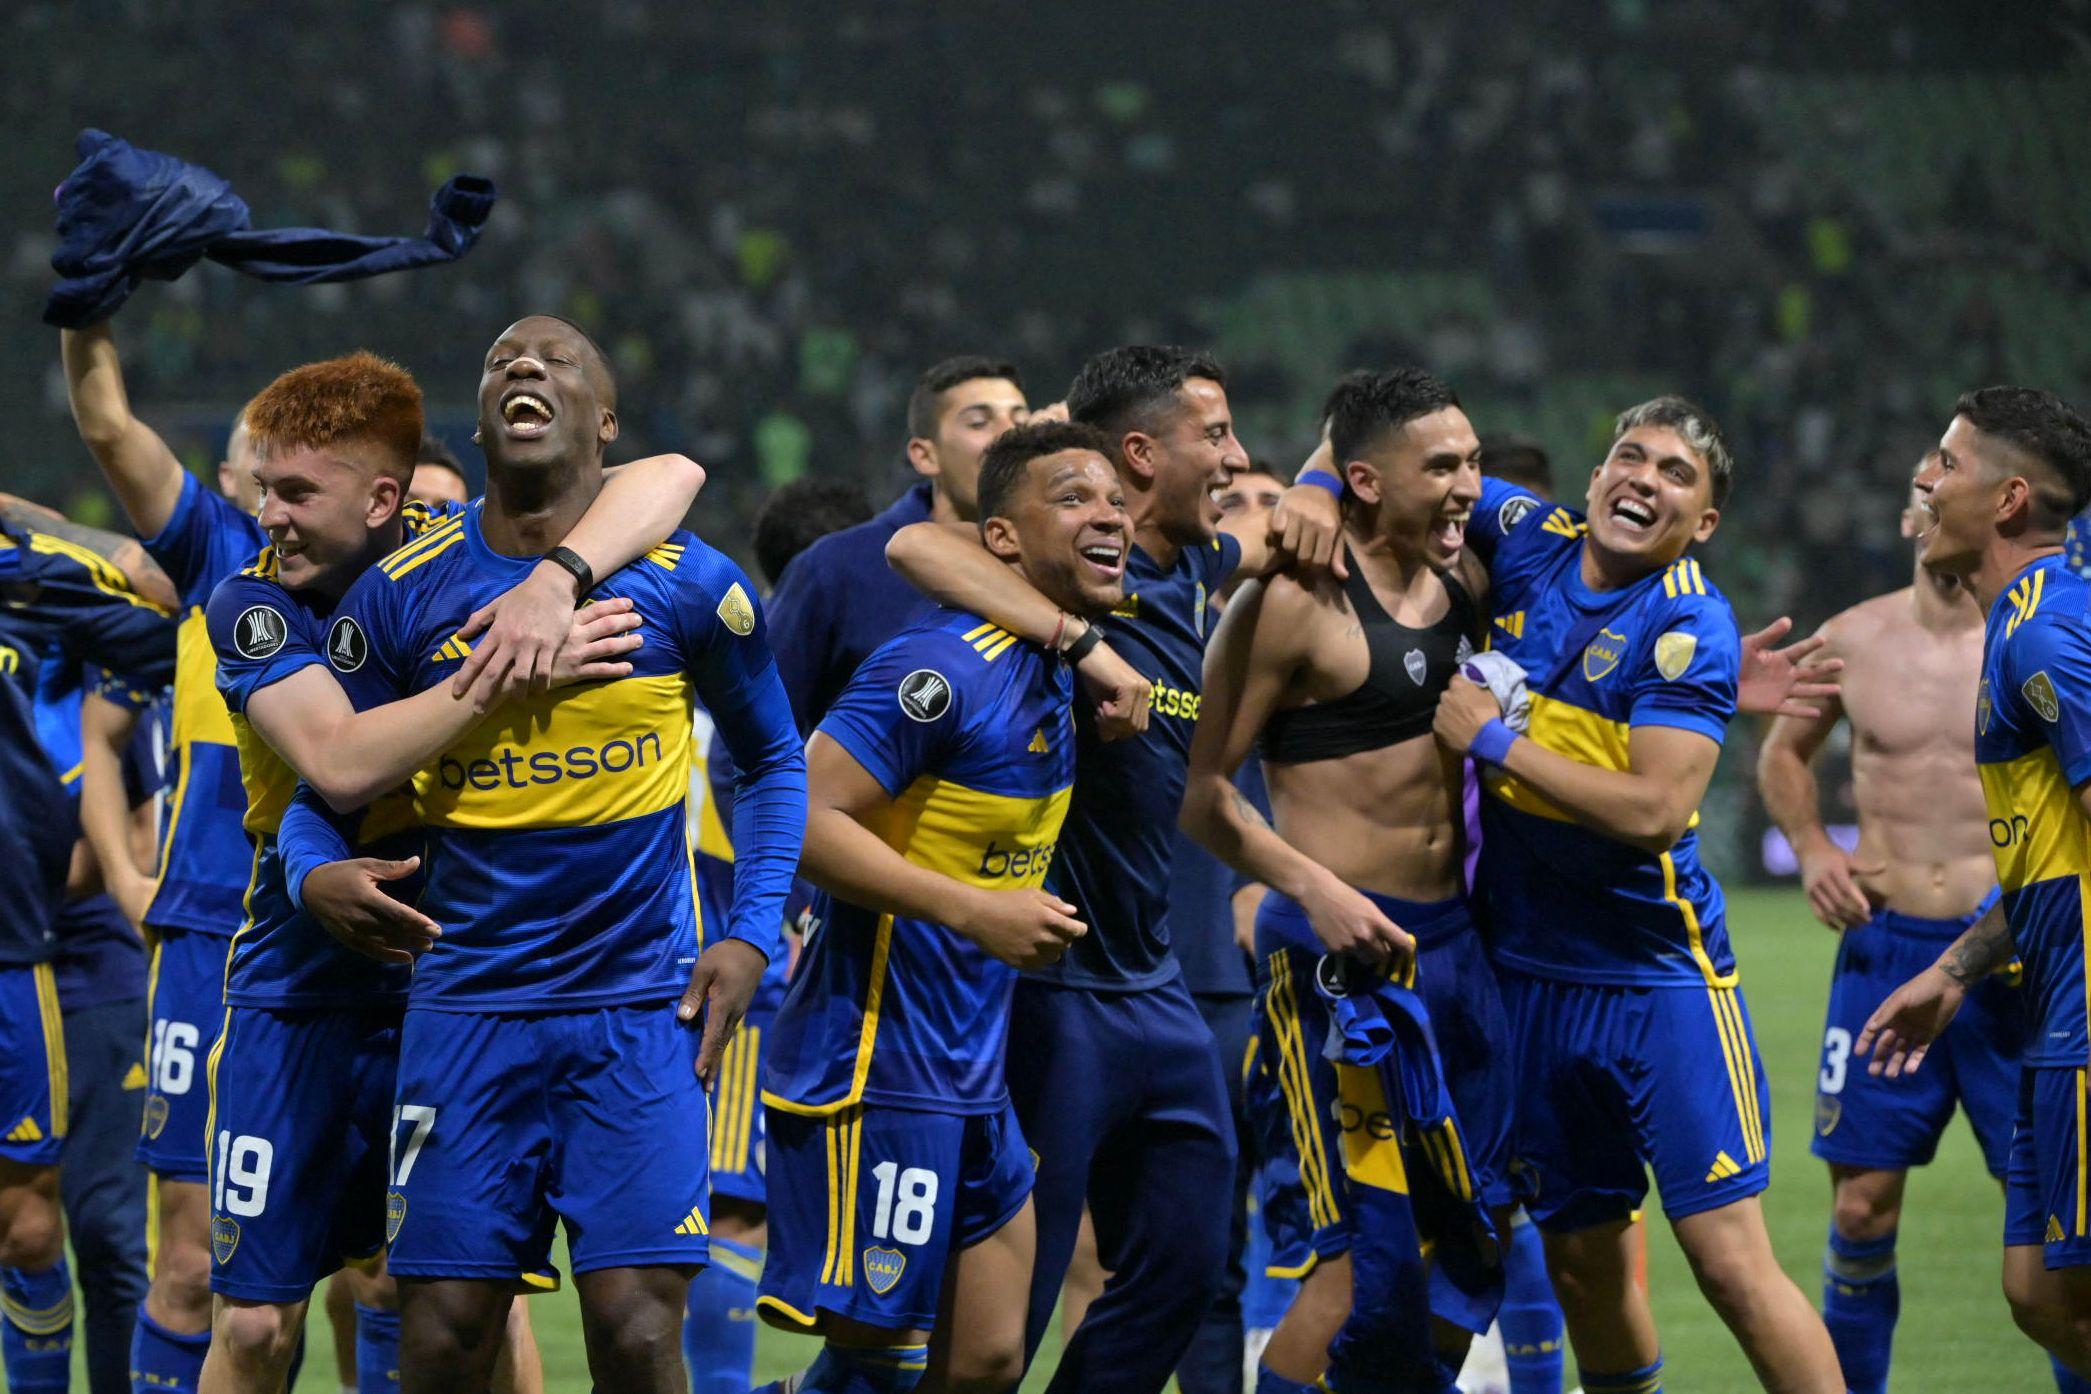 Palmeiras cai na Copa São Paulo e internet não perdoa: “não tem